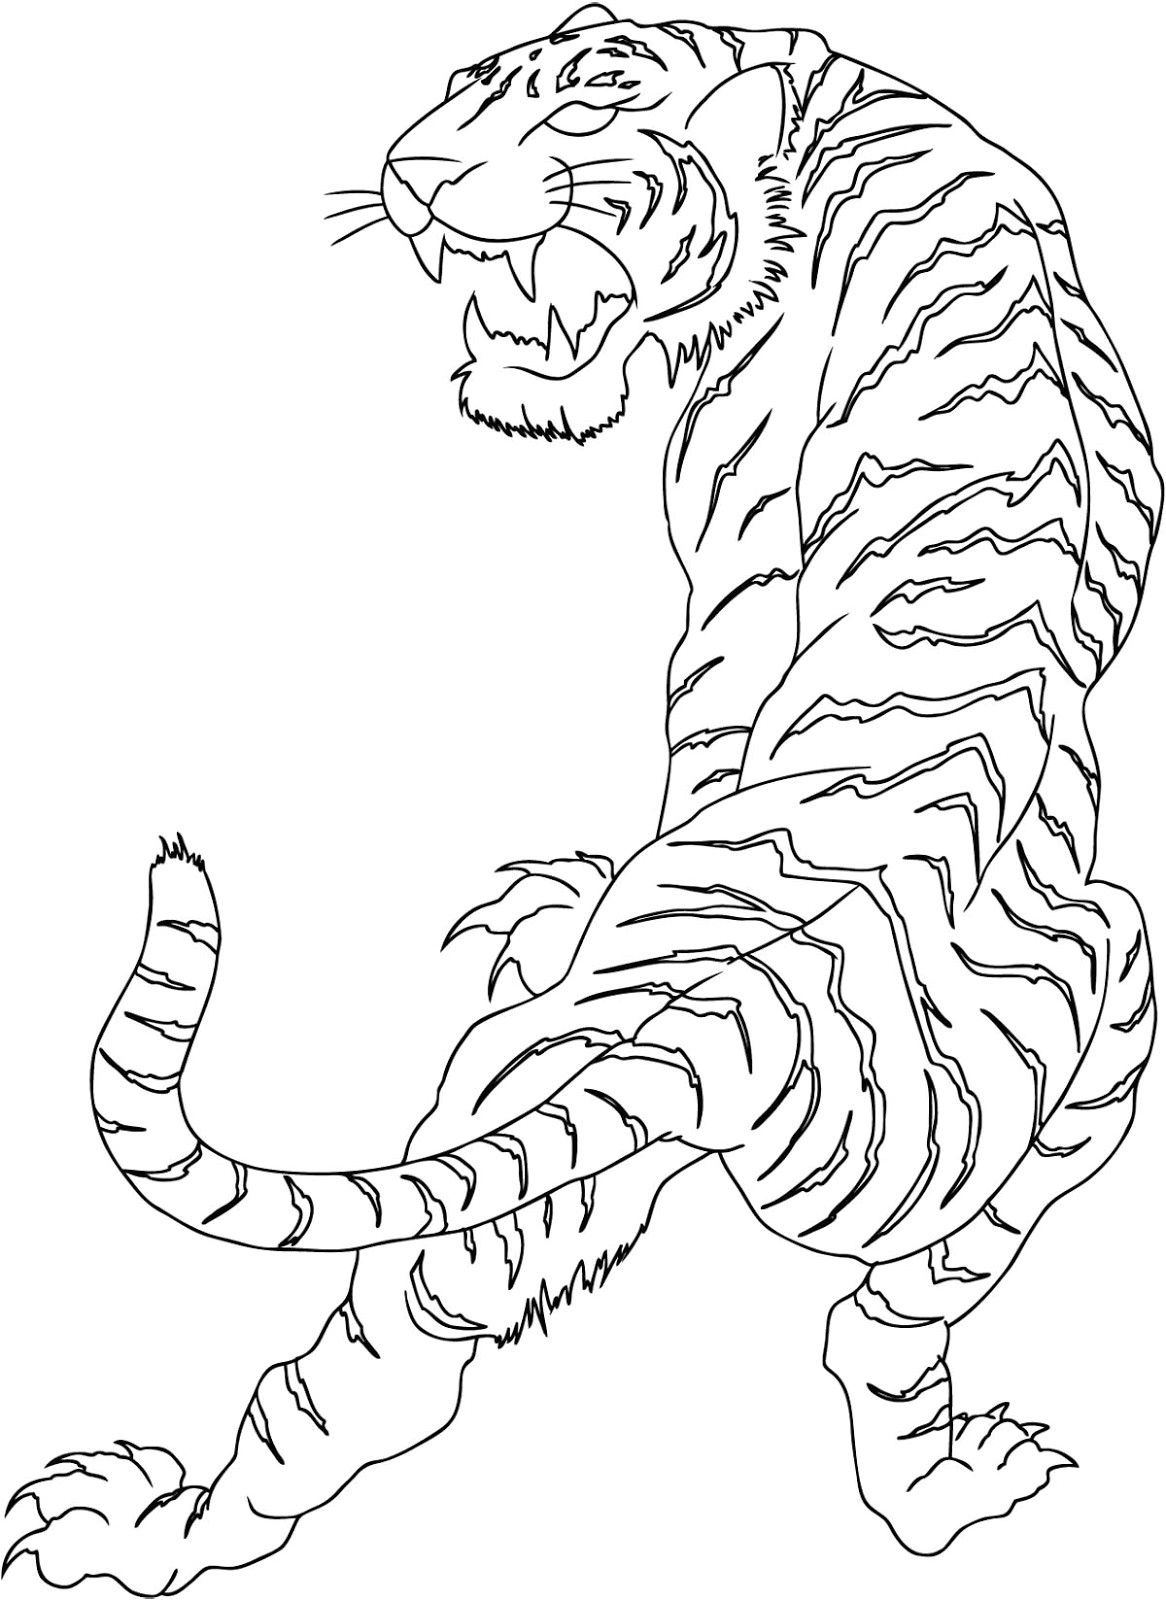 Tiger Tattoo Template Wild White Tiger Tattoo Tattoo Designs Ideas Gallery